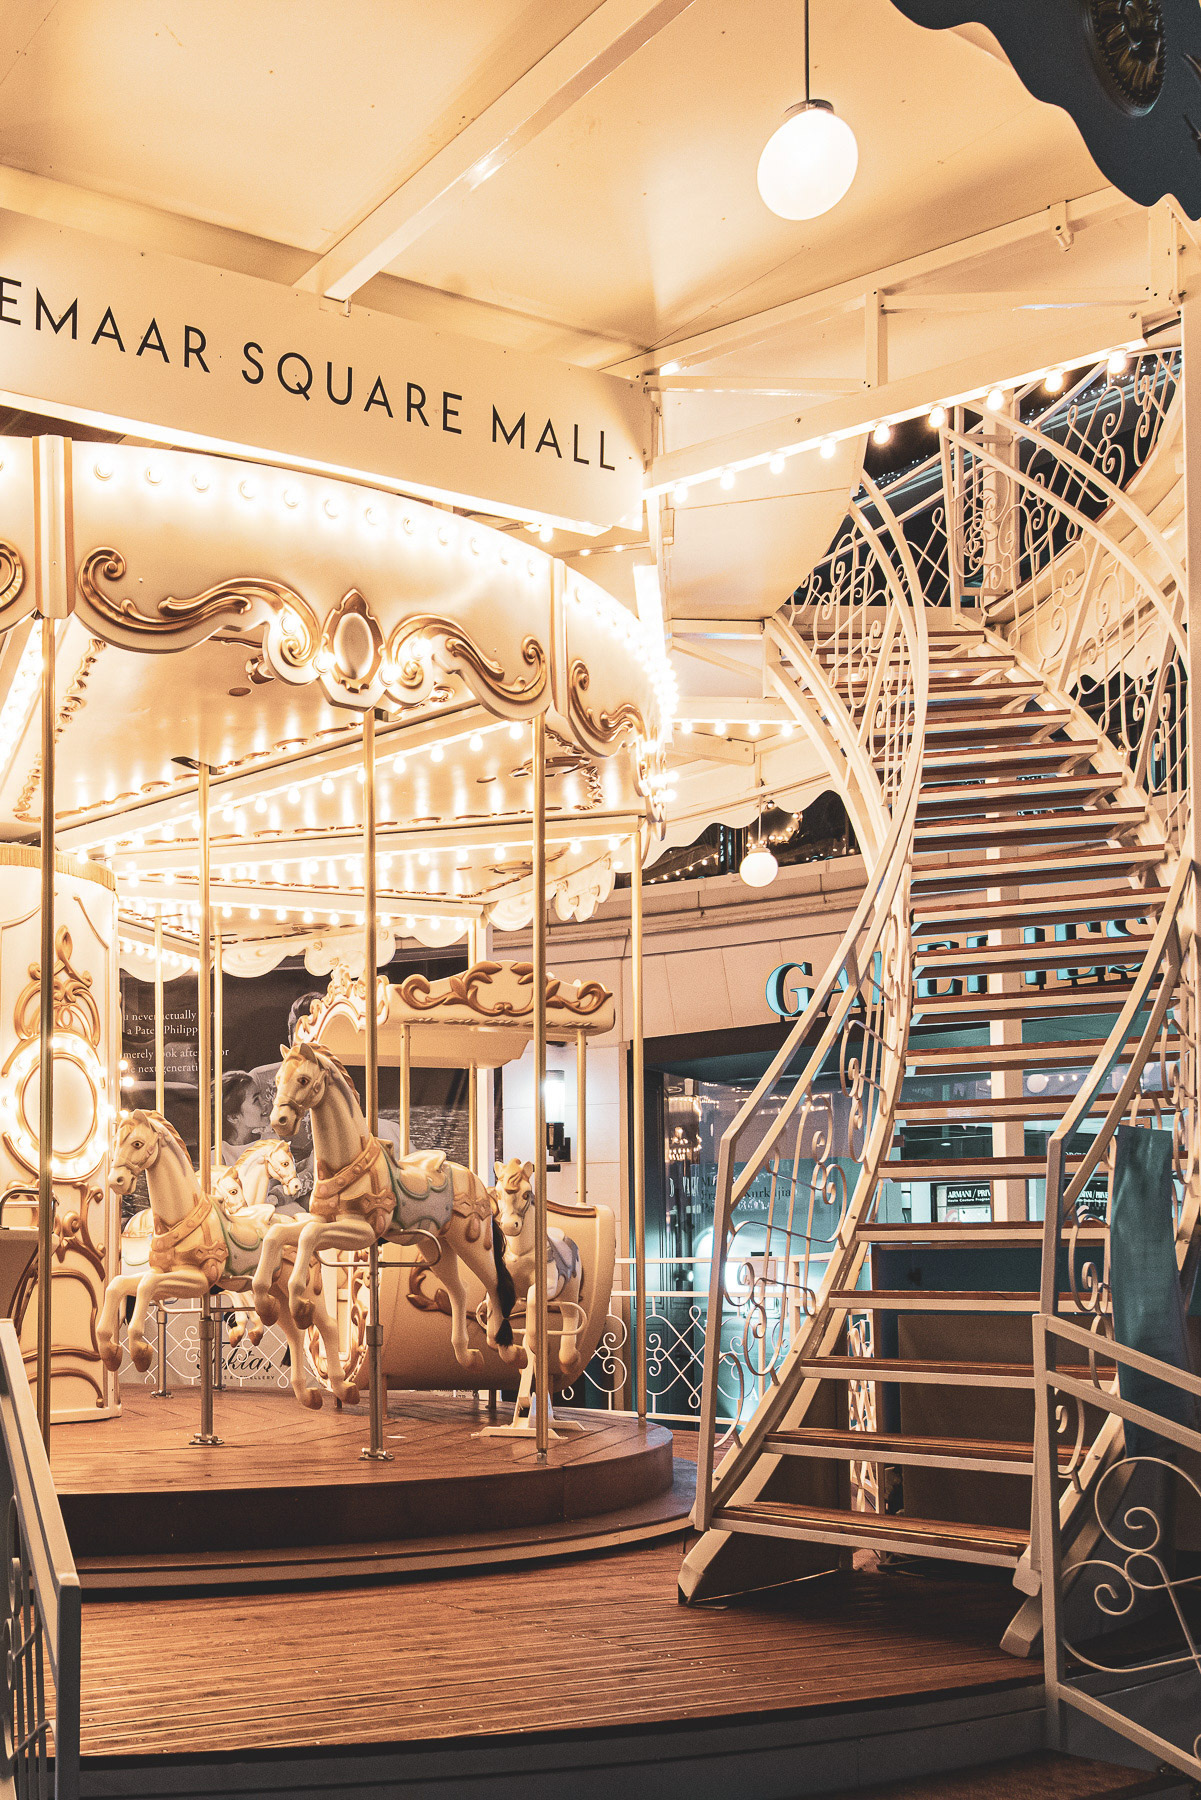 Emaar Square Mall Carousel Design for Festive Season